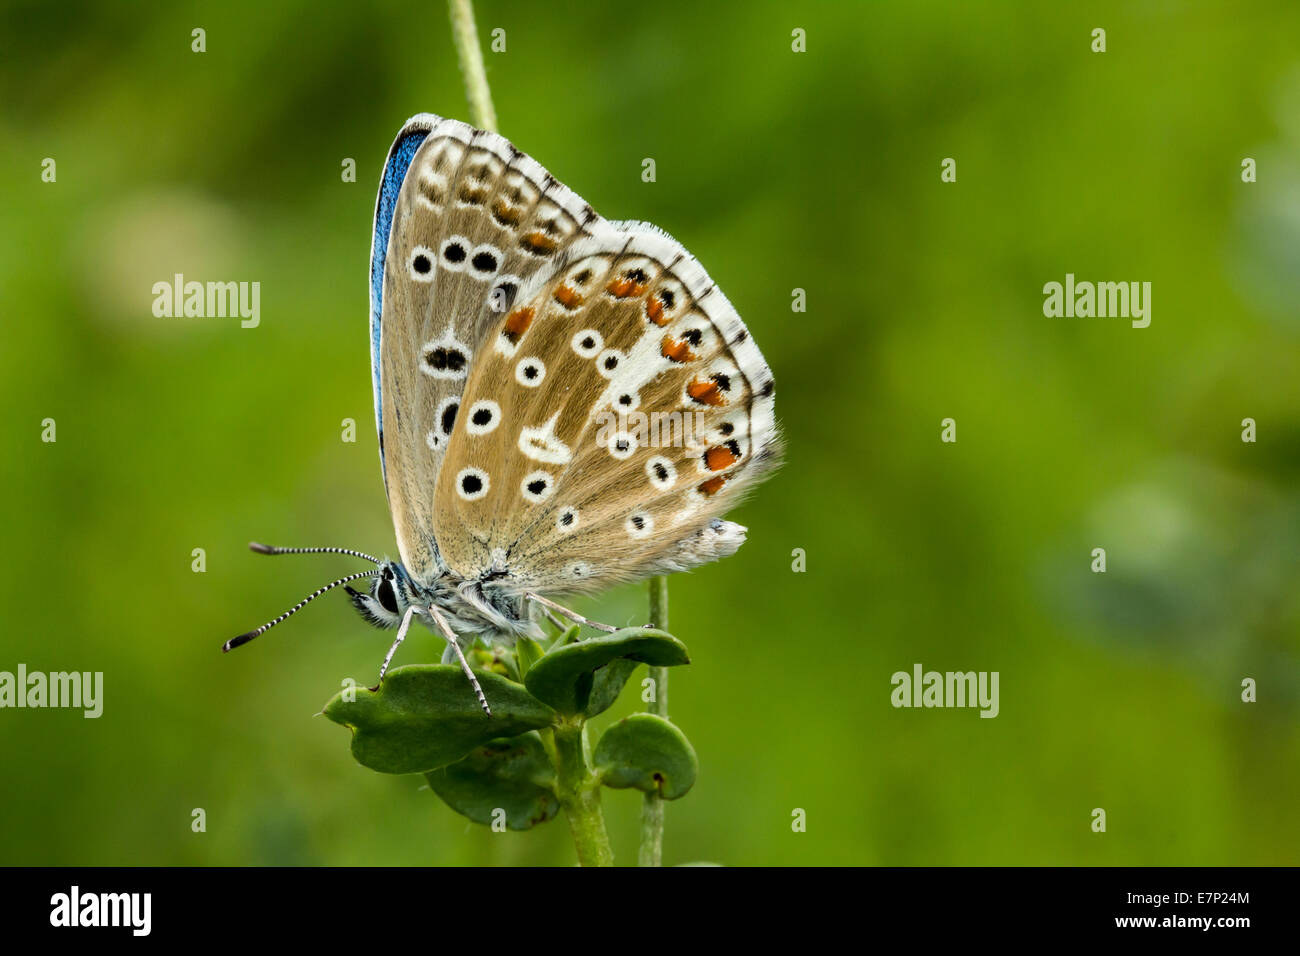 Animale, insetto, Butterfly, Lepidoptera, Arthropoda, Blu, Polyommatus coridon, fiore, Chalkhill blu, bianco Foto Stock